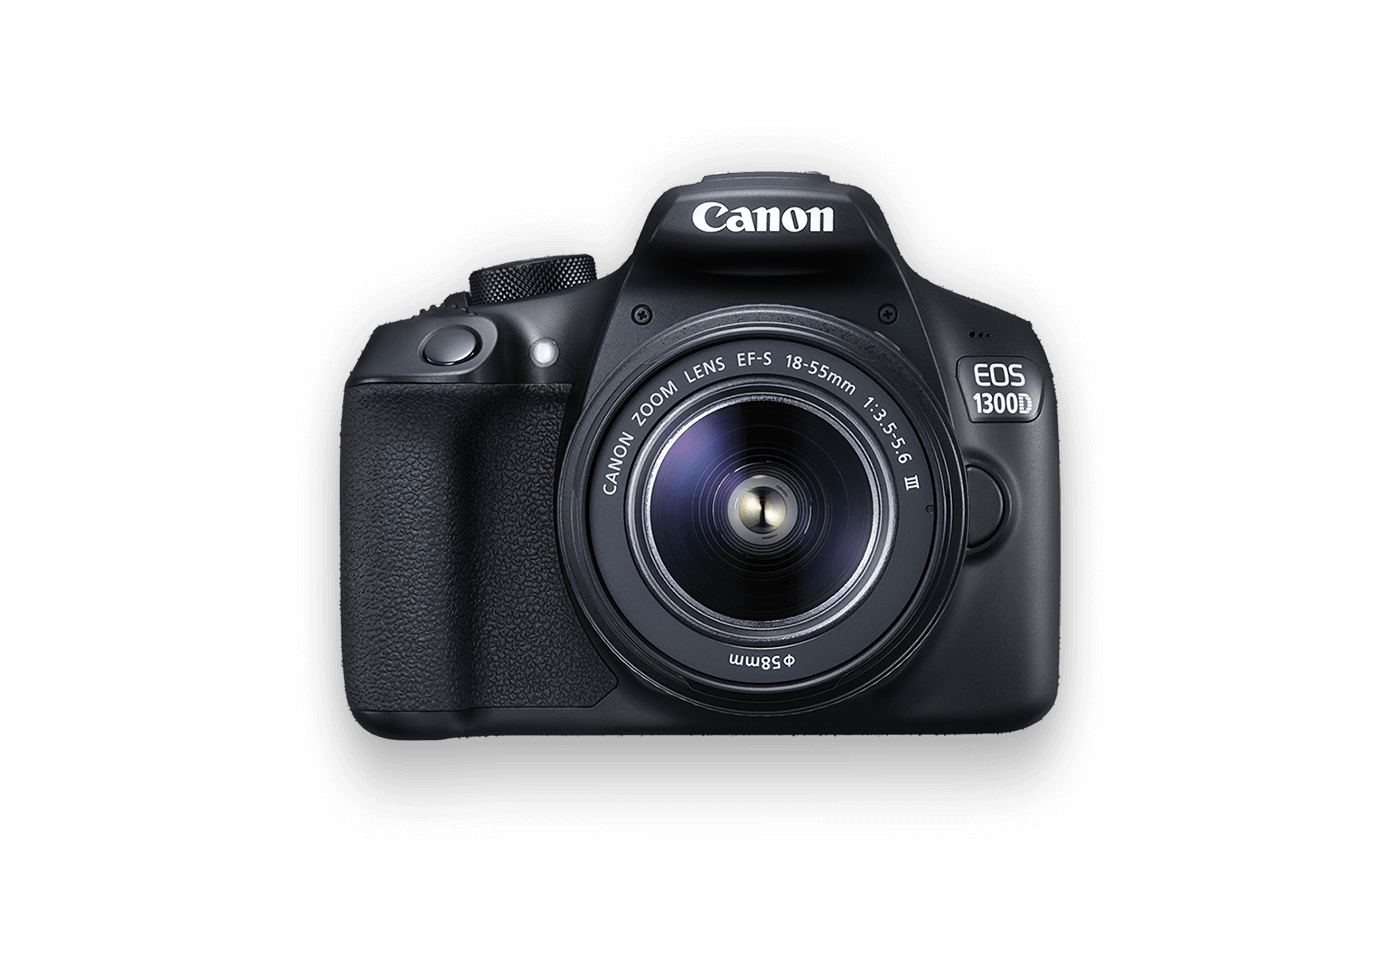 Canon EOS 1300D DSLR camera